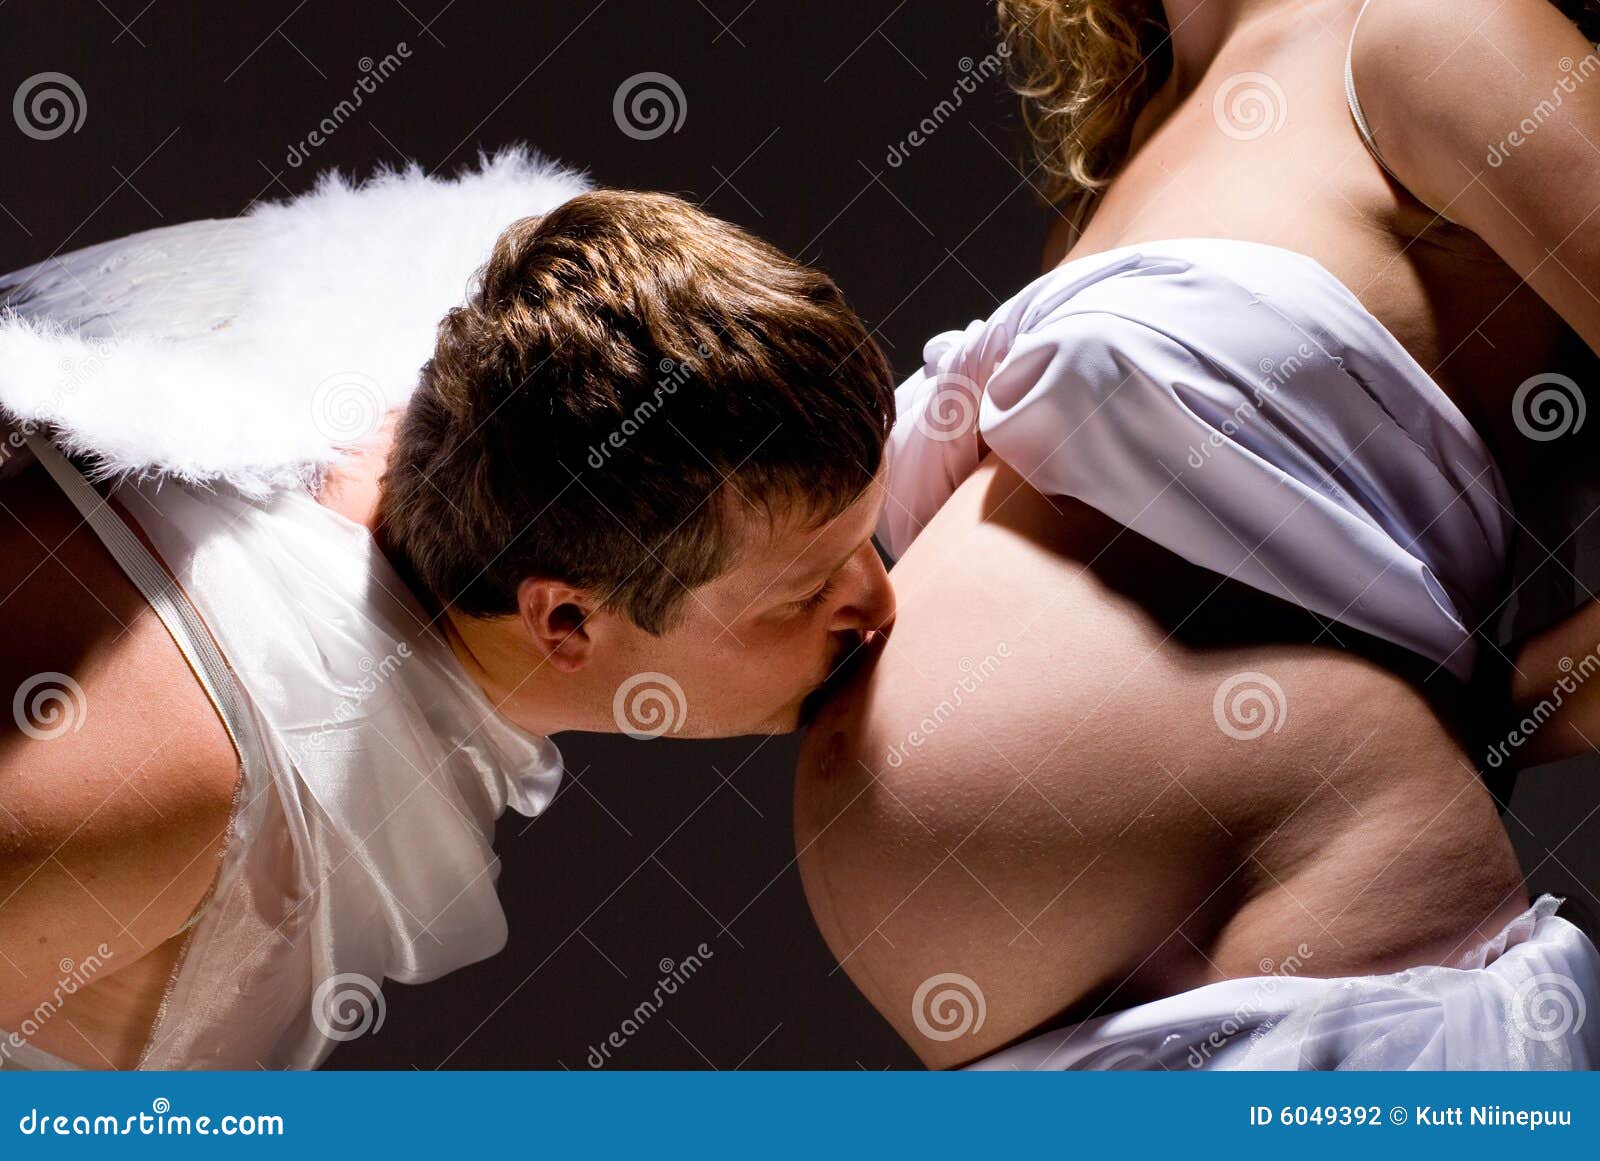 целовать женскую грудь на фотографиях фото 43